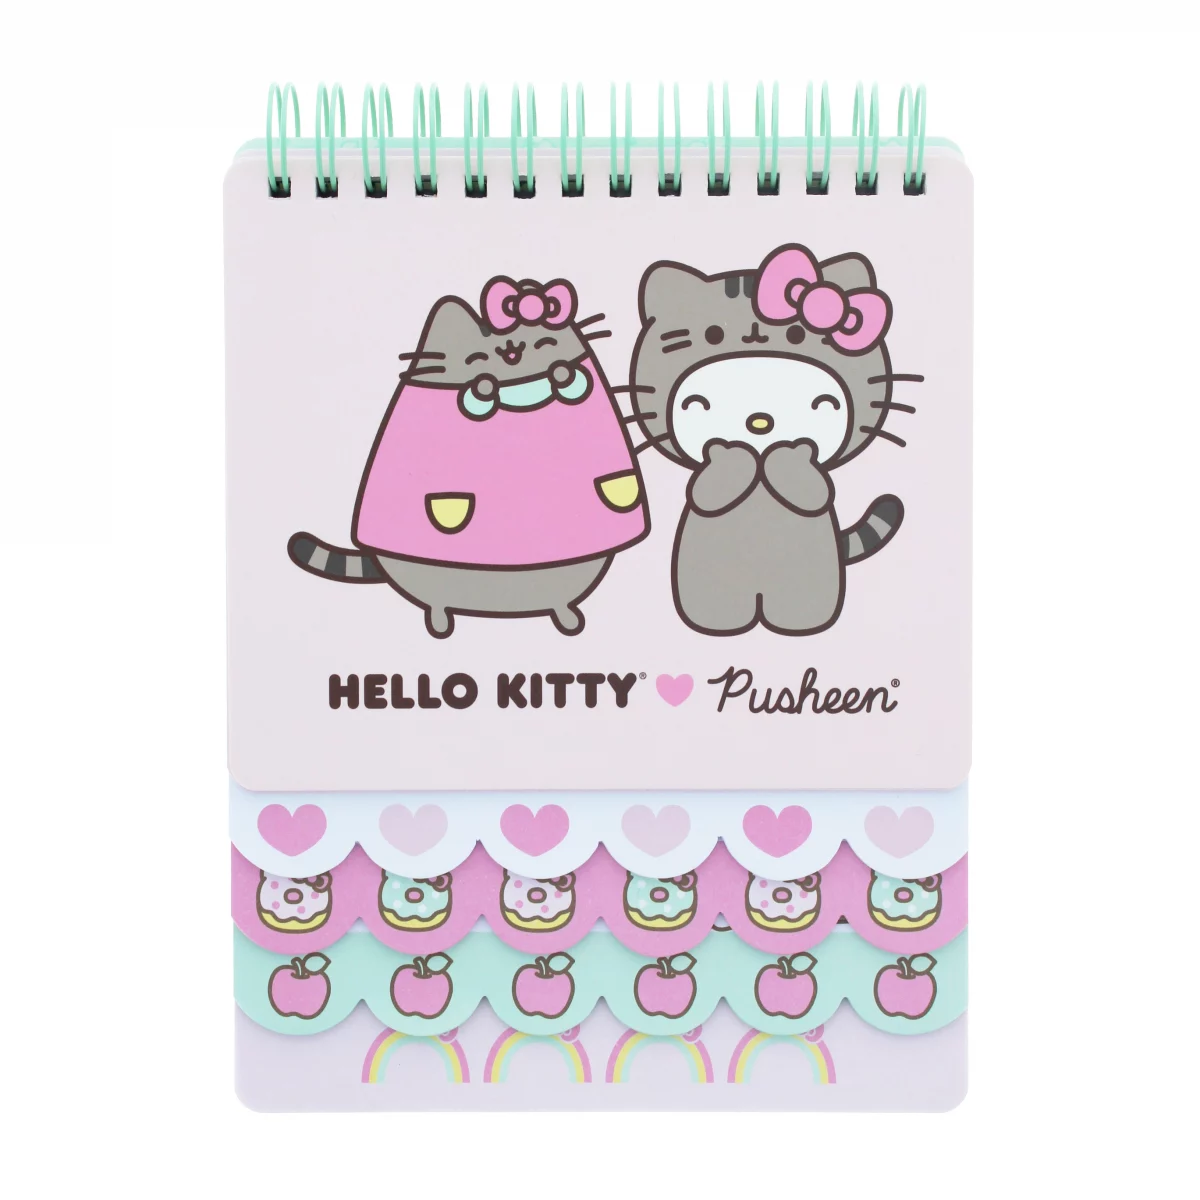 Imagen de cuaderno de capas de hello kitty y pusheen